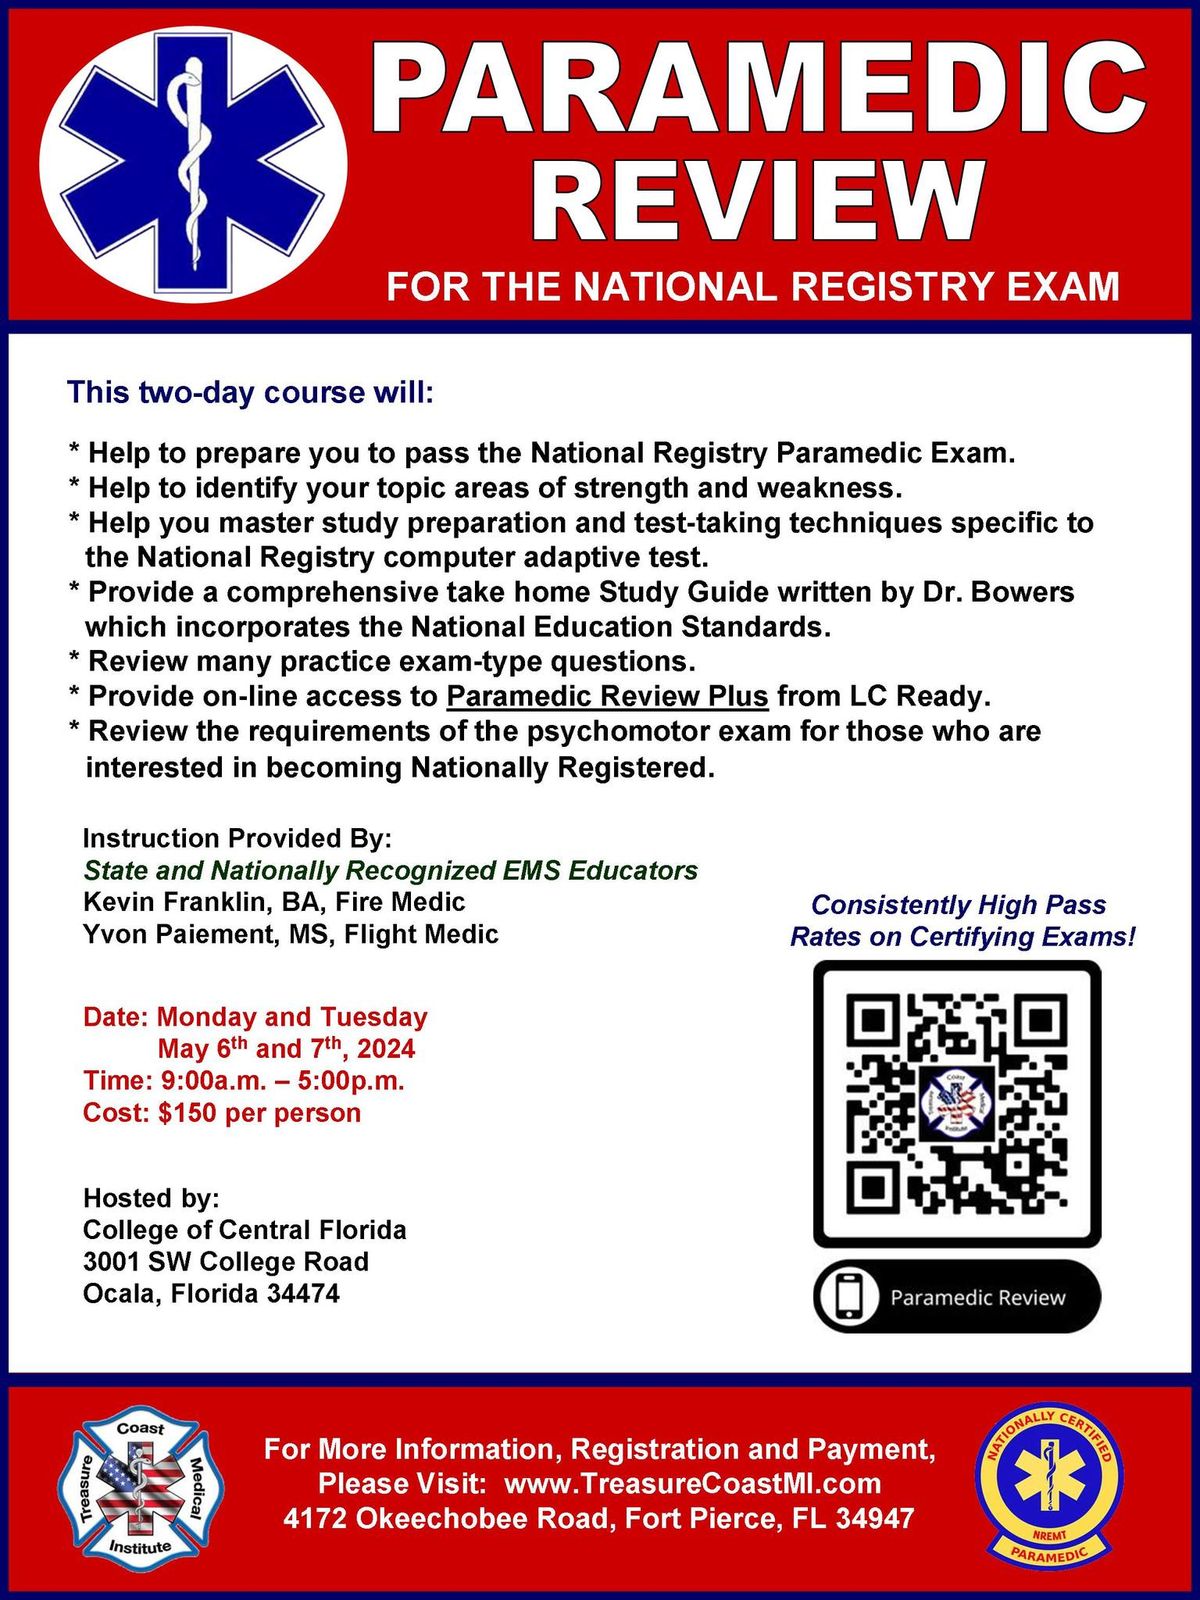 Paramedic Review for National Registry Exam